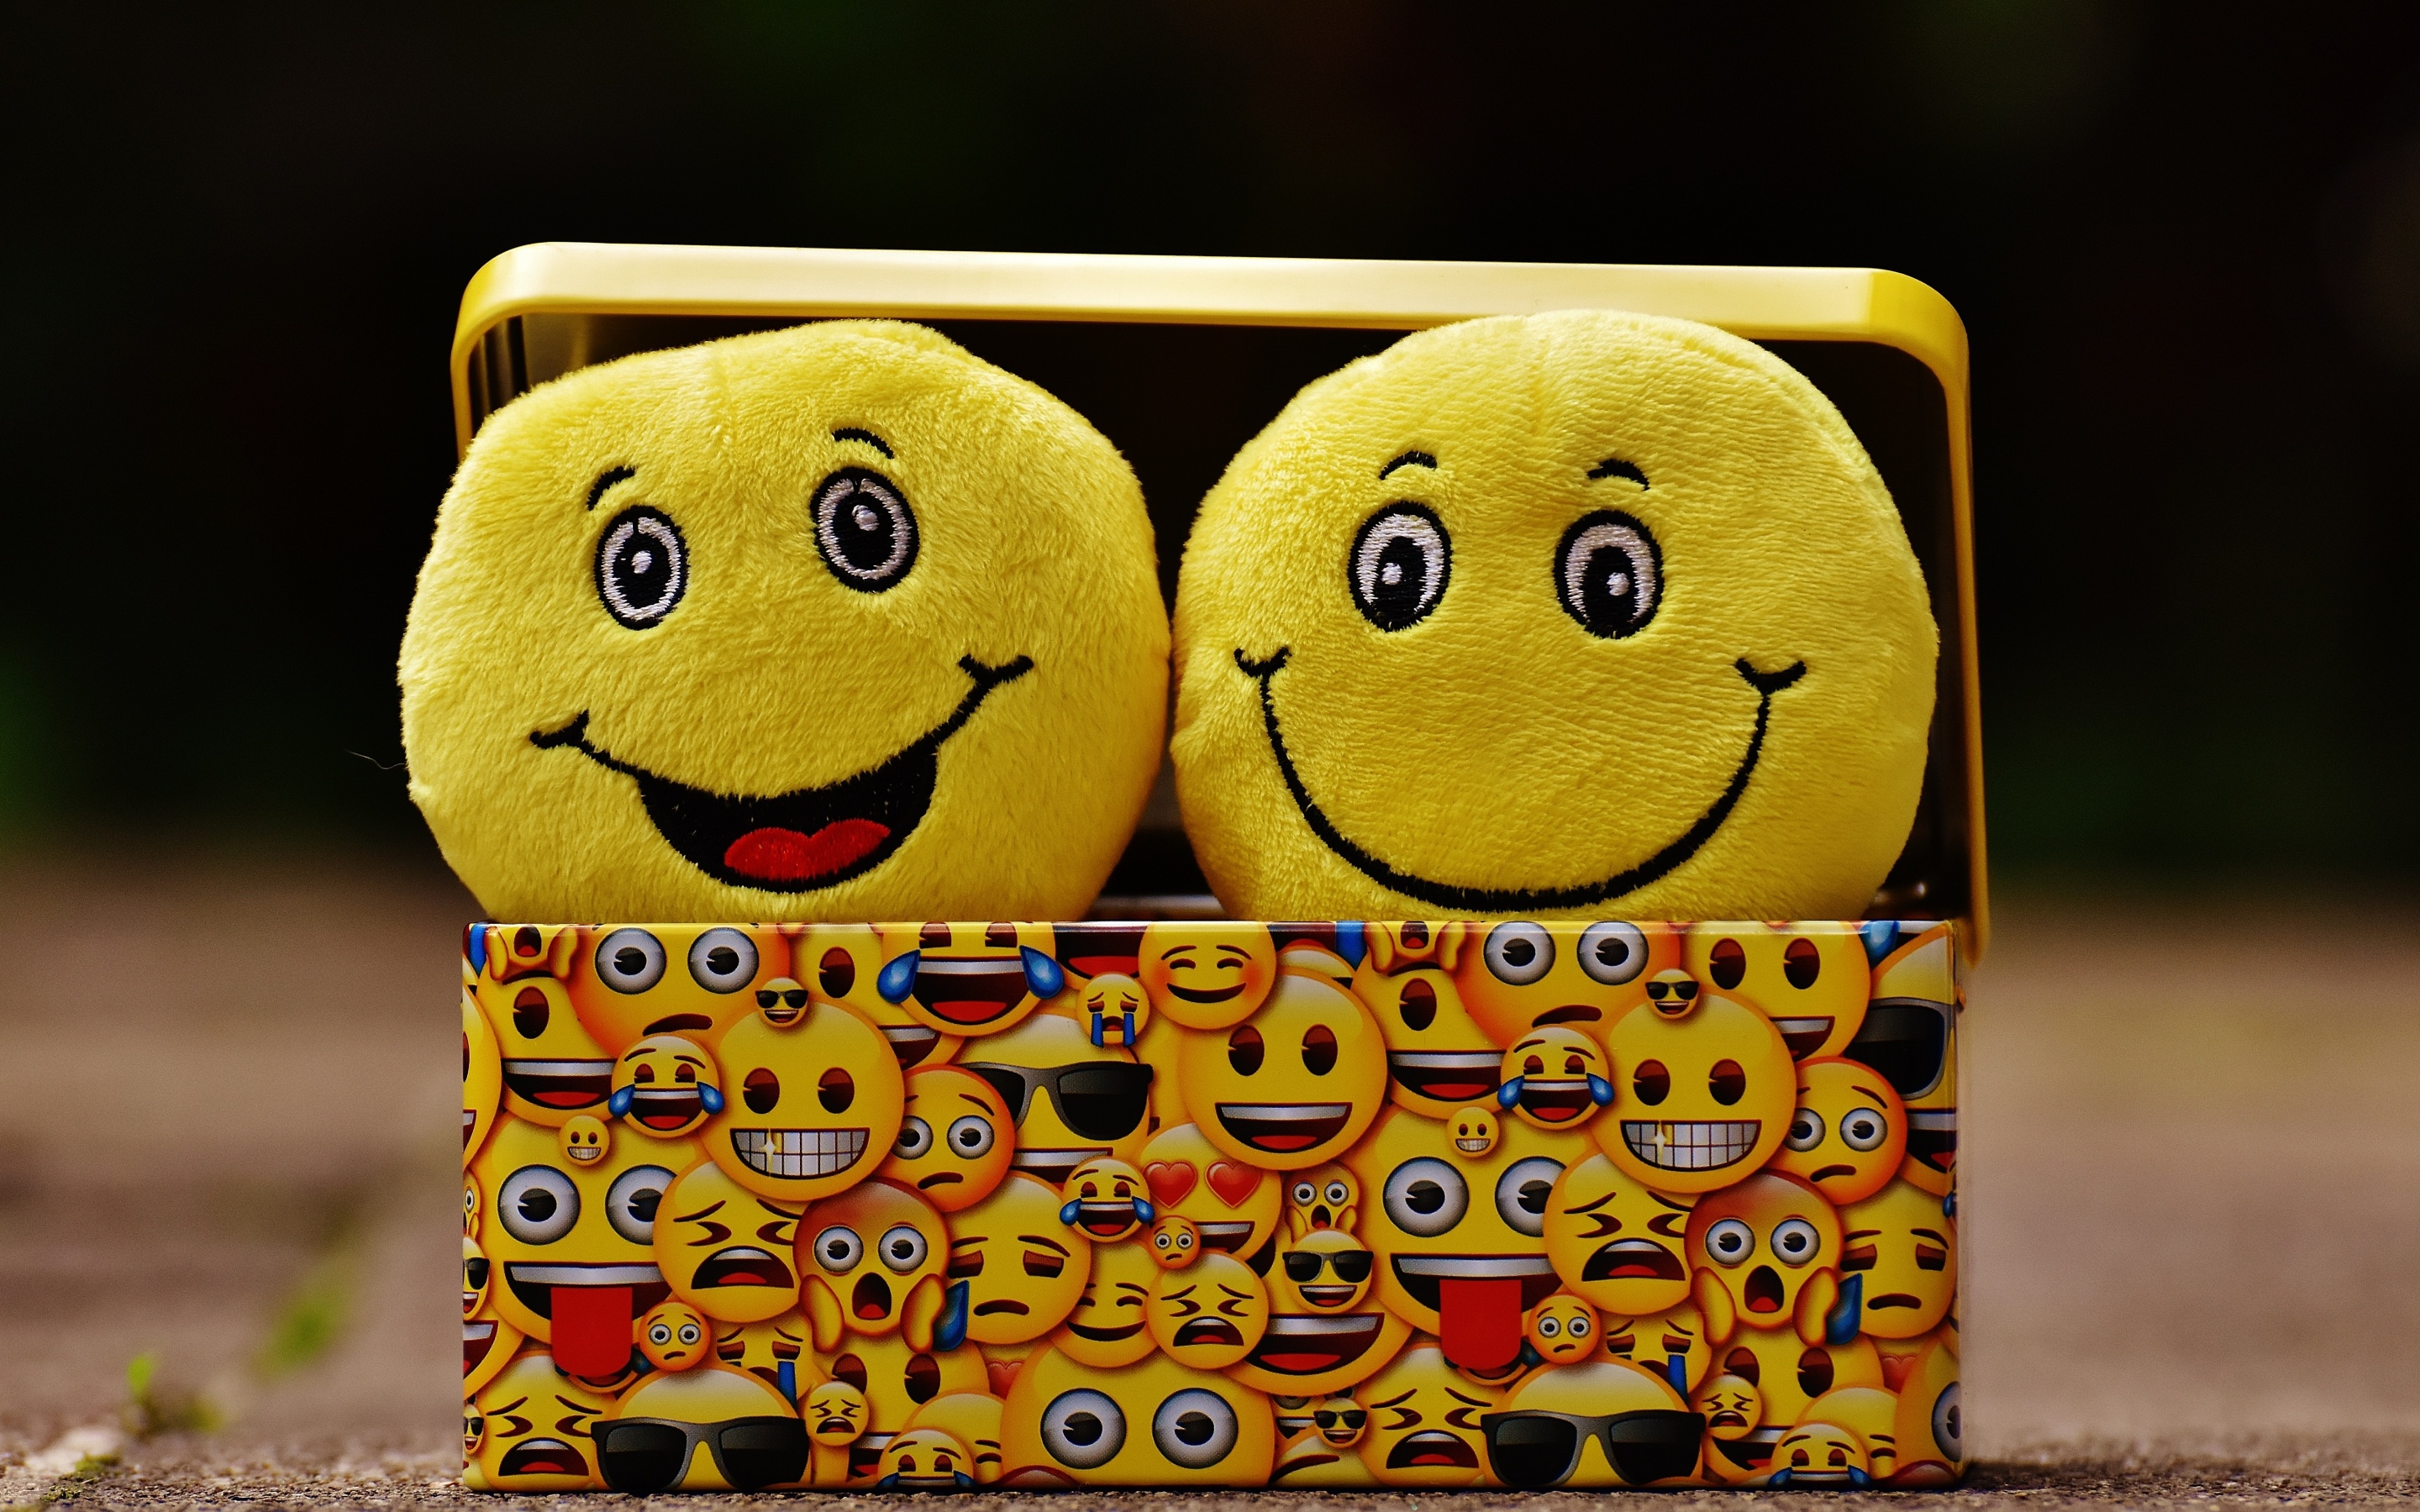 900+ Emoji Background Images: Download HD Backgrounds on Unsplash